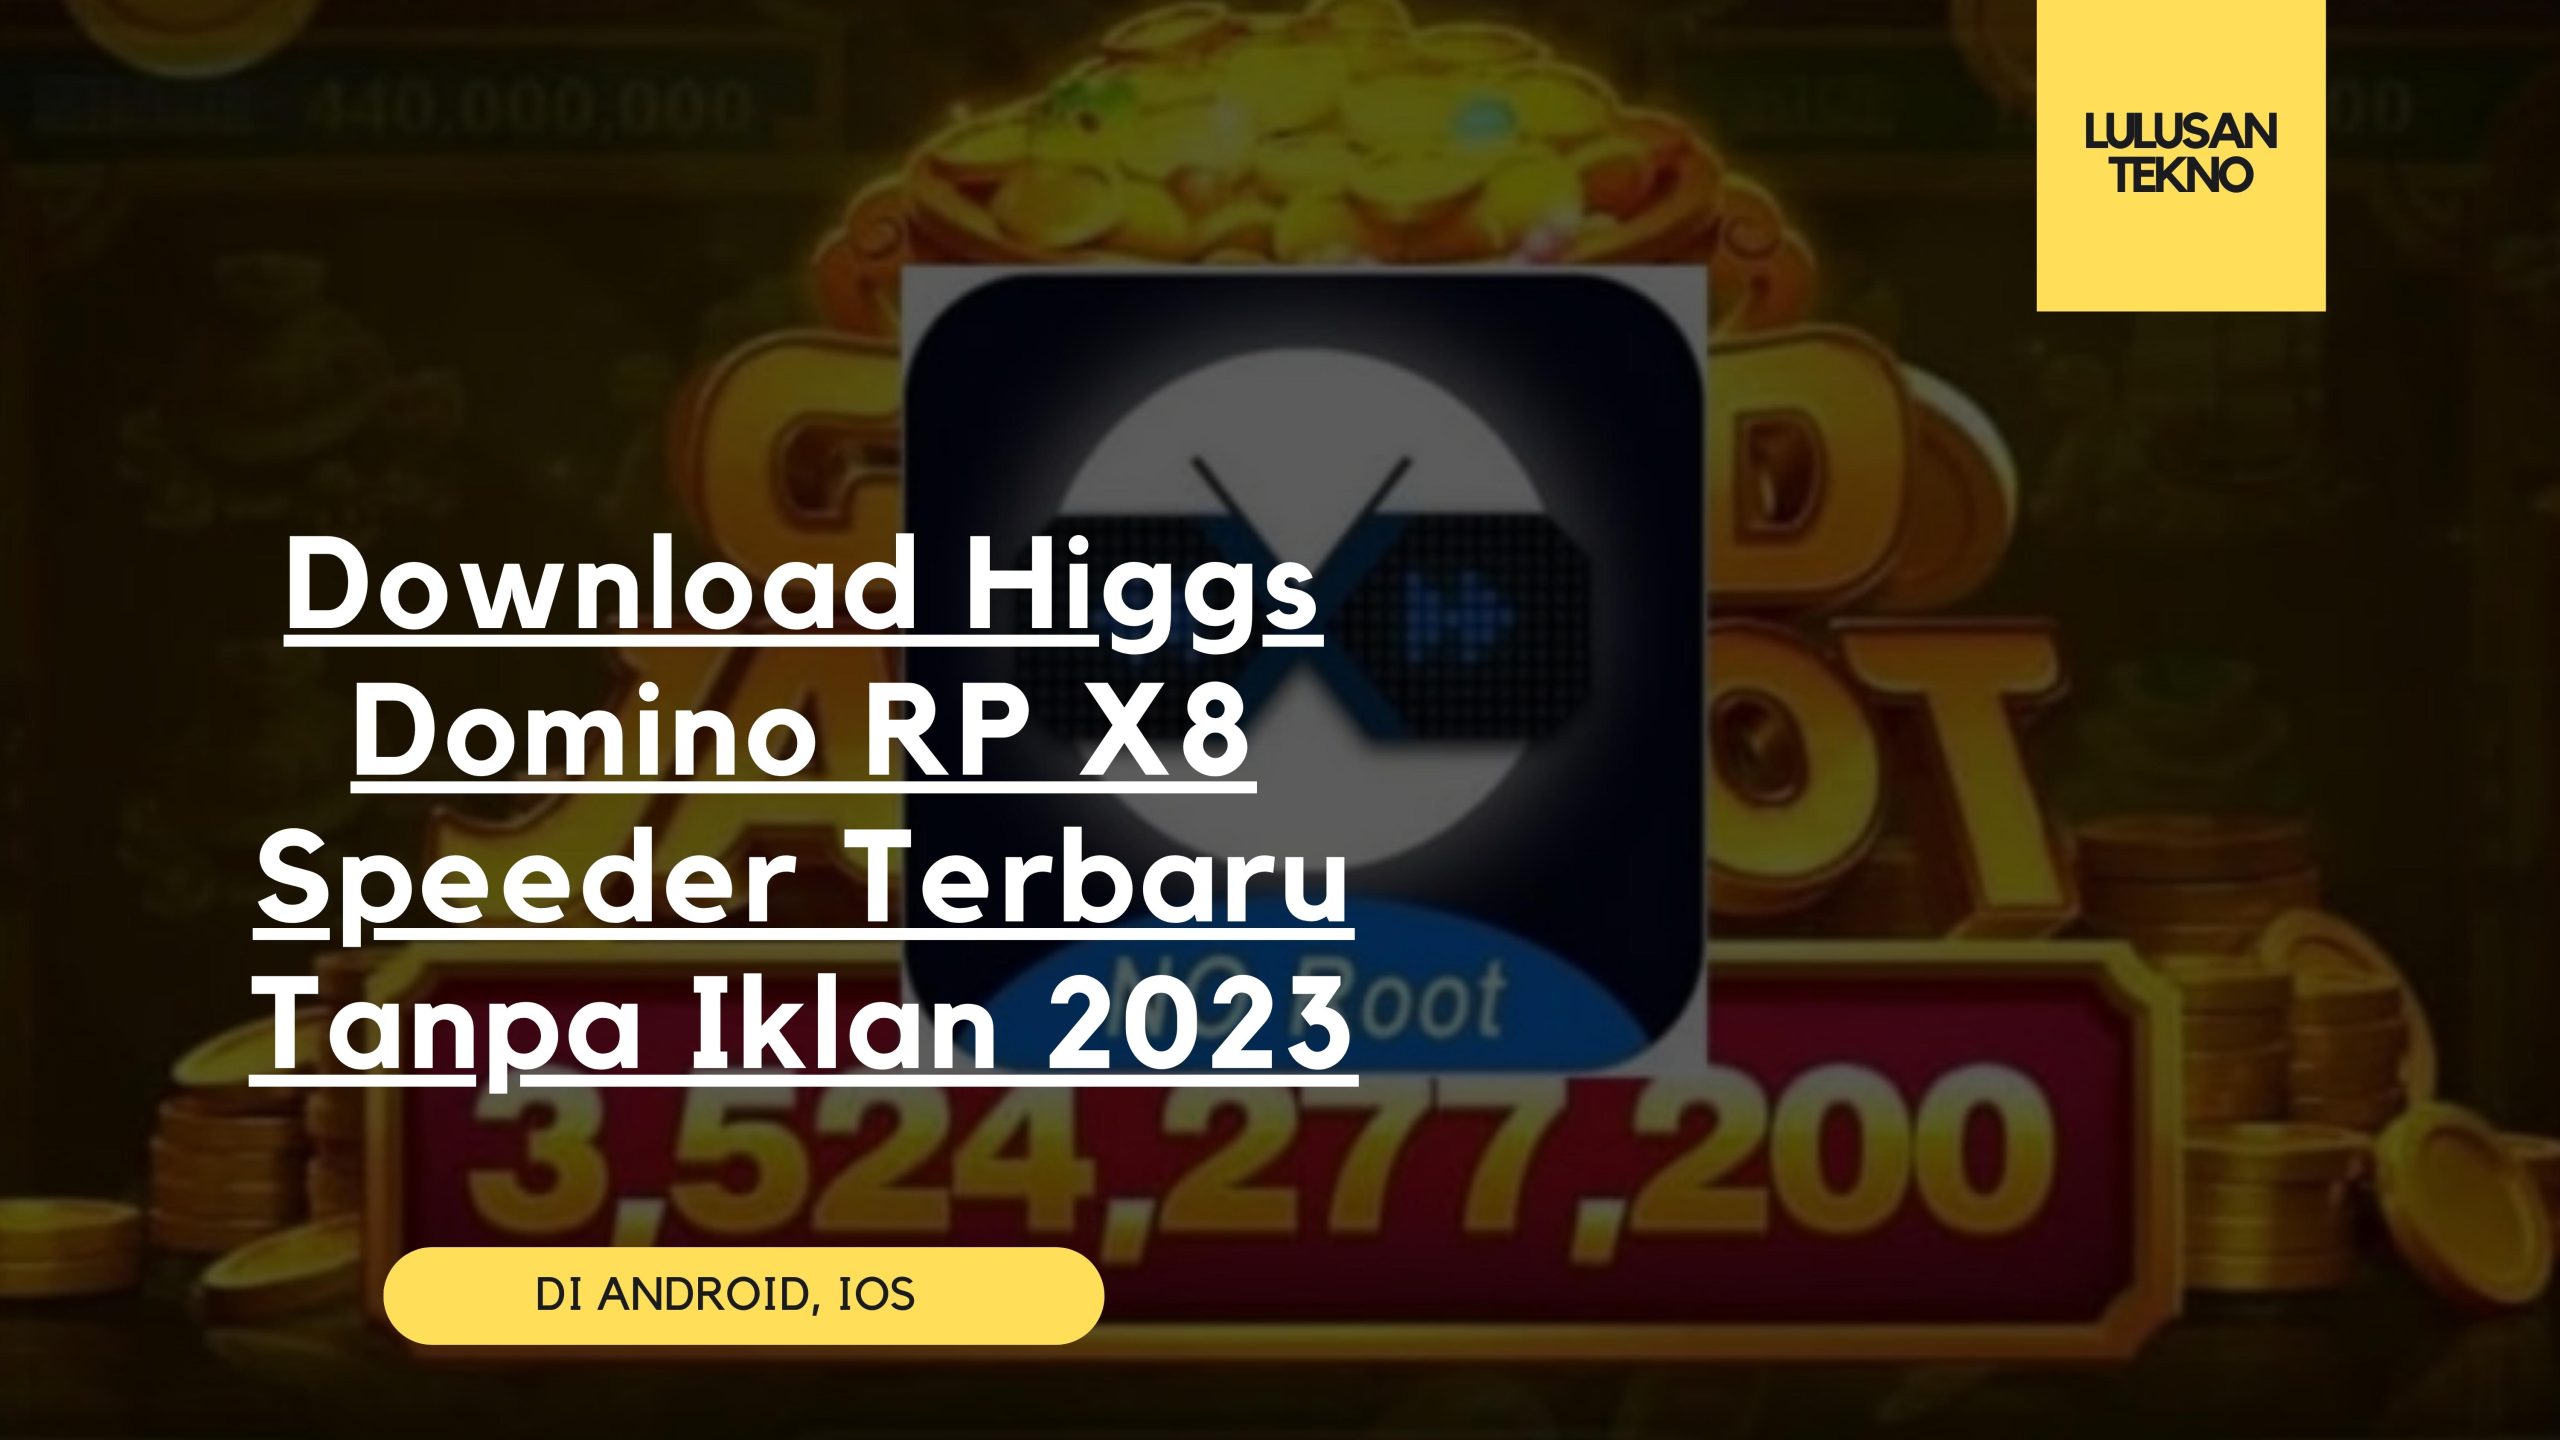 Download Higgs Domino RP X8 Speeder Terbaru Tanpa Iklan 2023